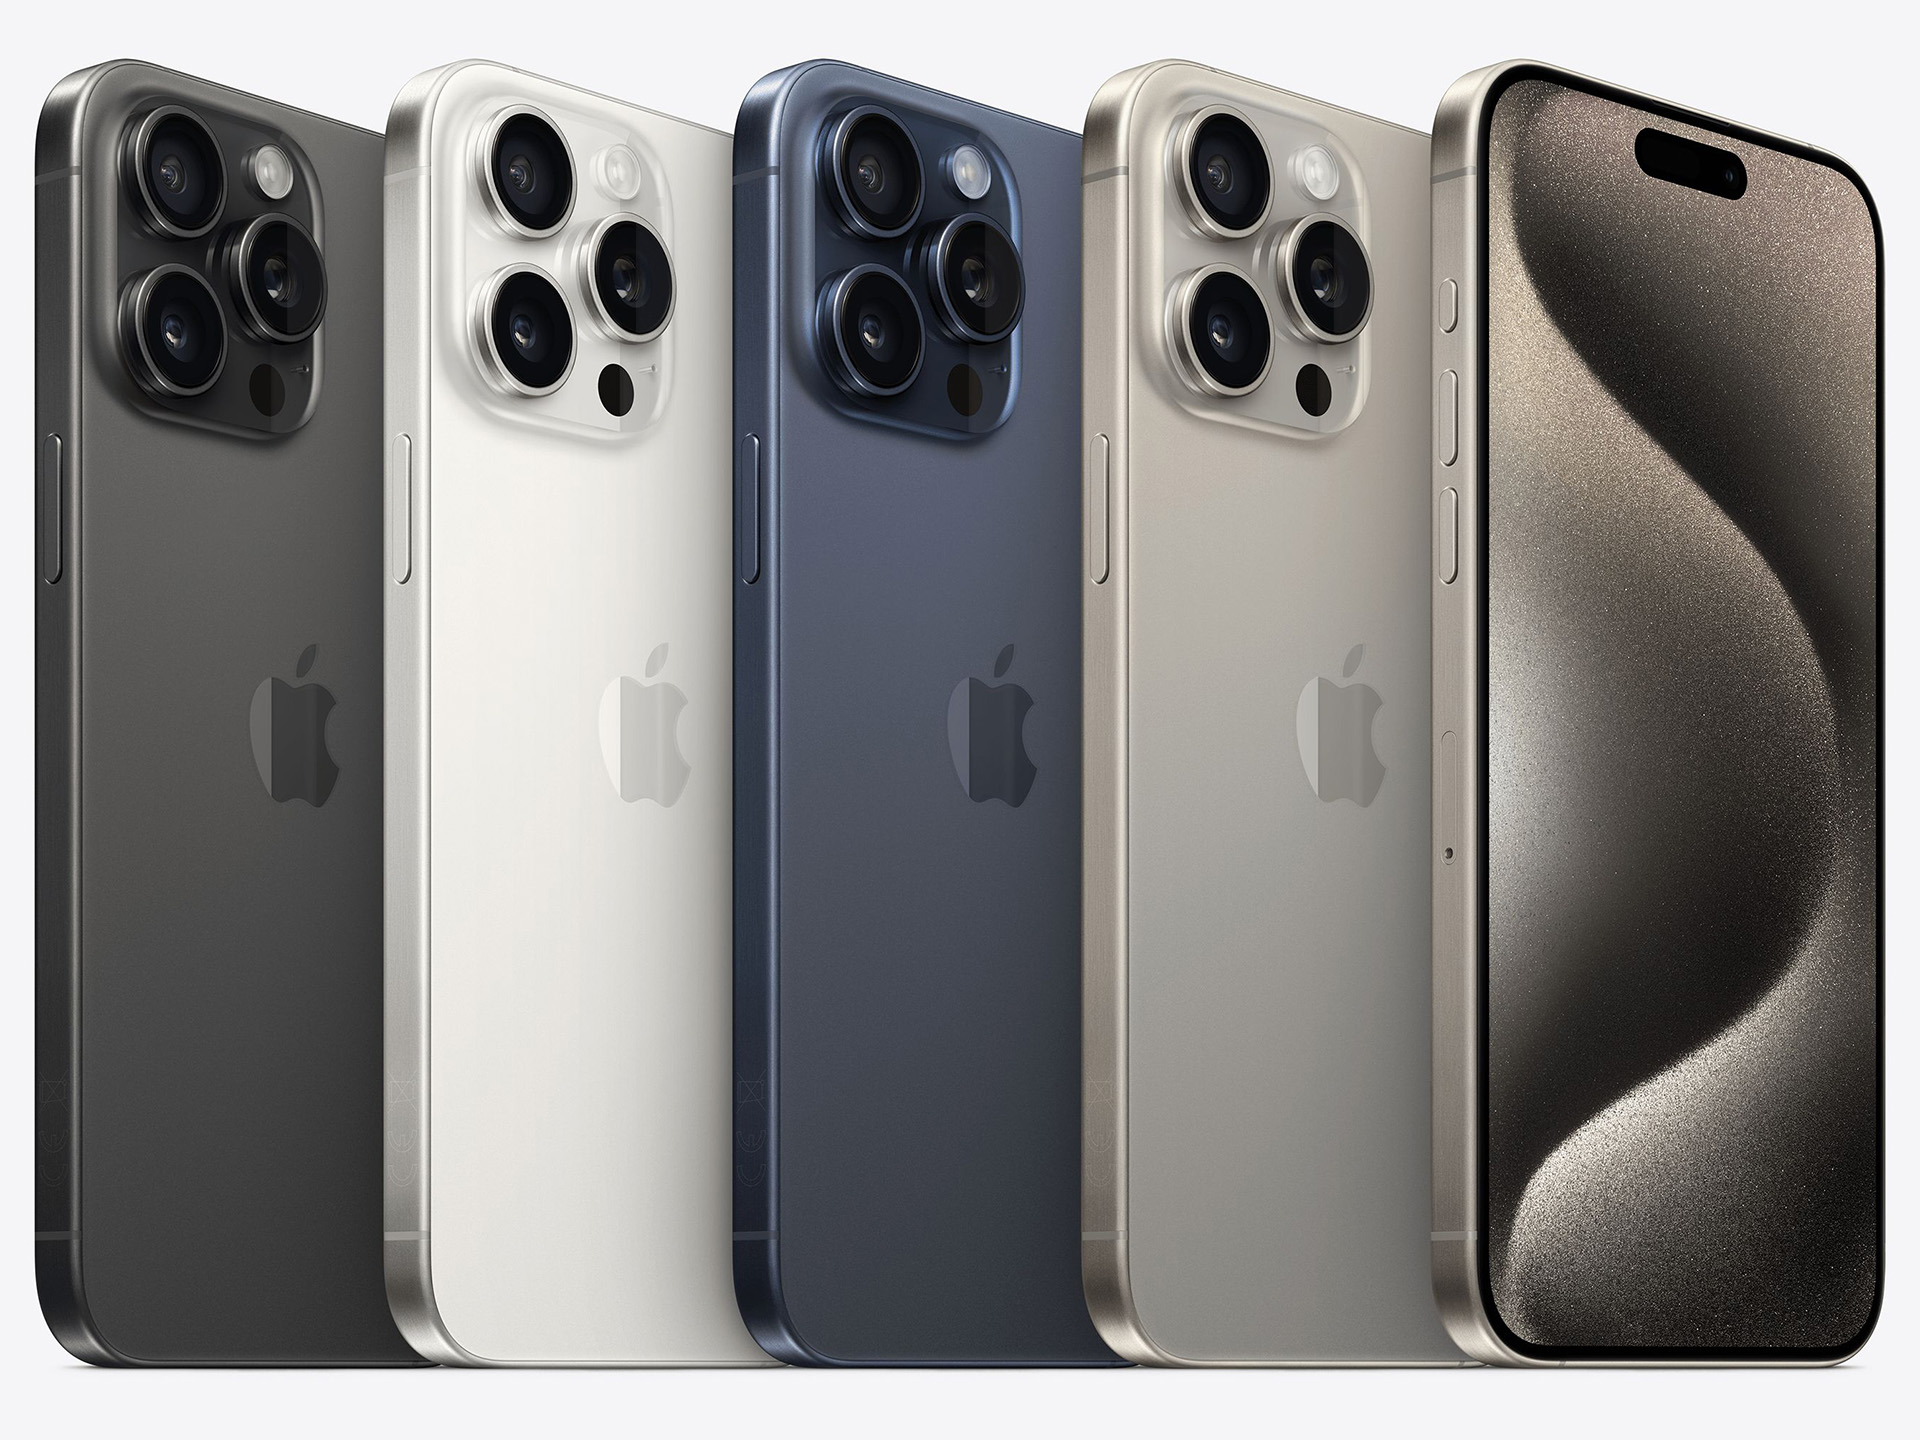 Apple a annoncé l'iPhone 12 Pro Max, le plus grand des iPhone - CNET France